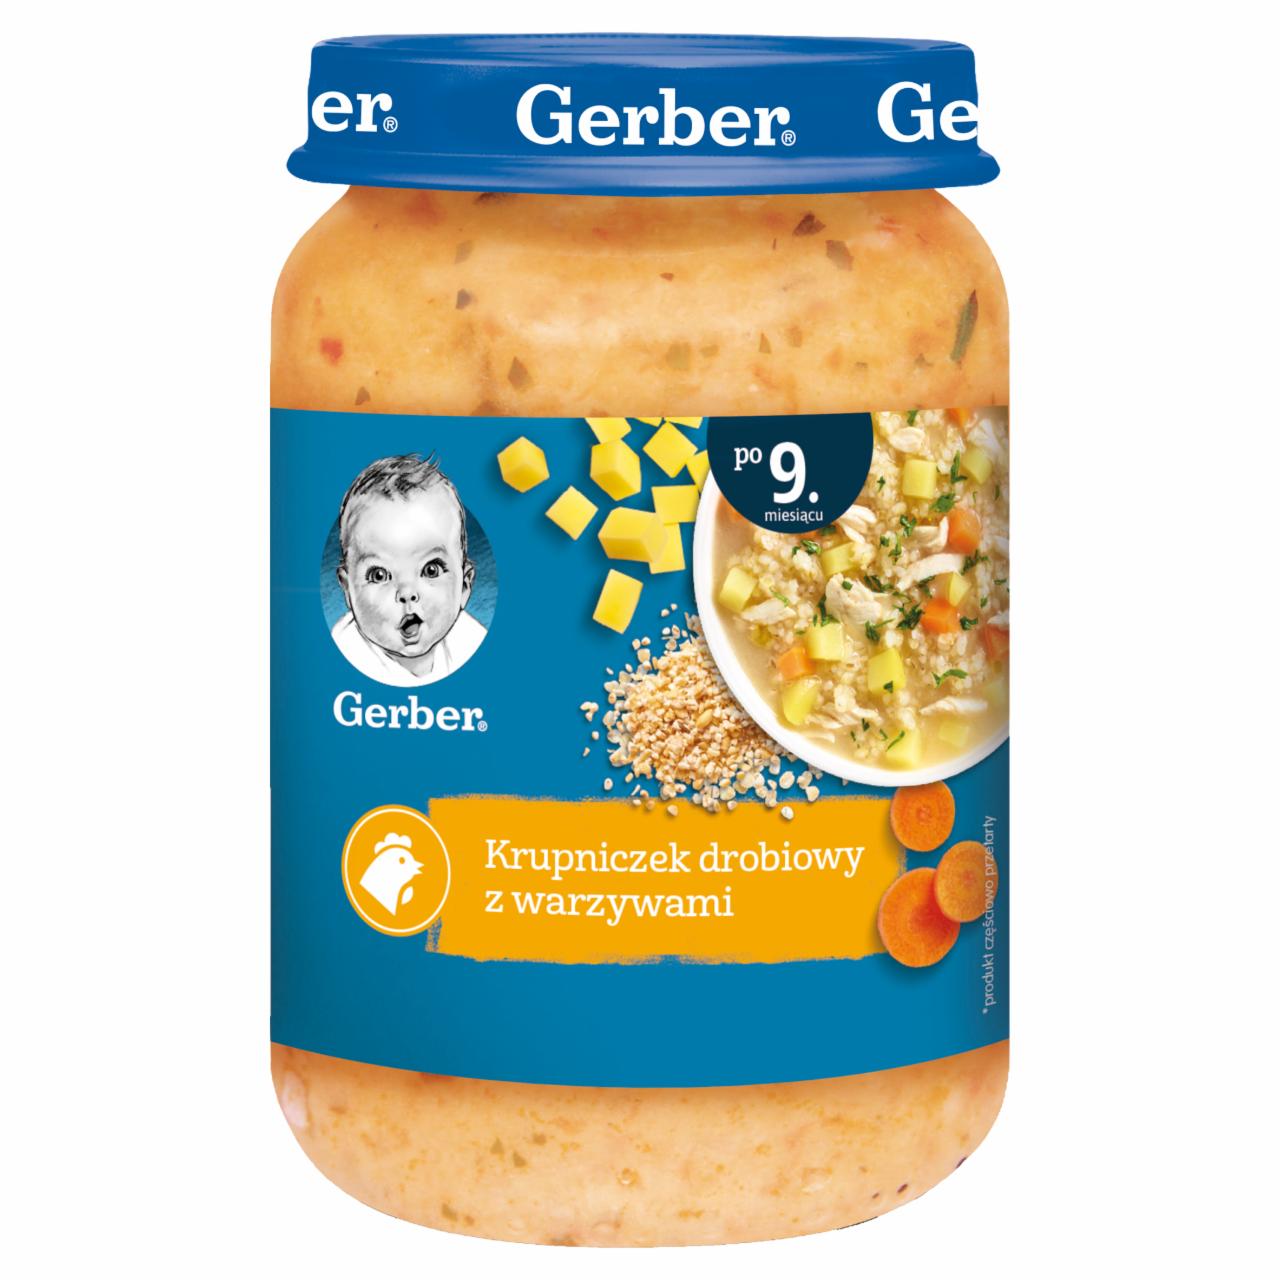 Zdjęcia - Gerber Krupniczek drobiowy z warzywami dla niemowląt po 9. miesiącu 190 g